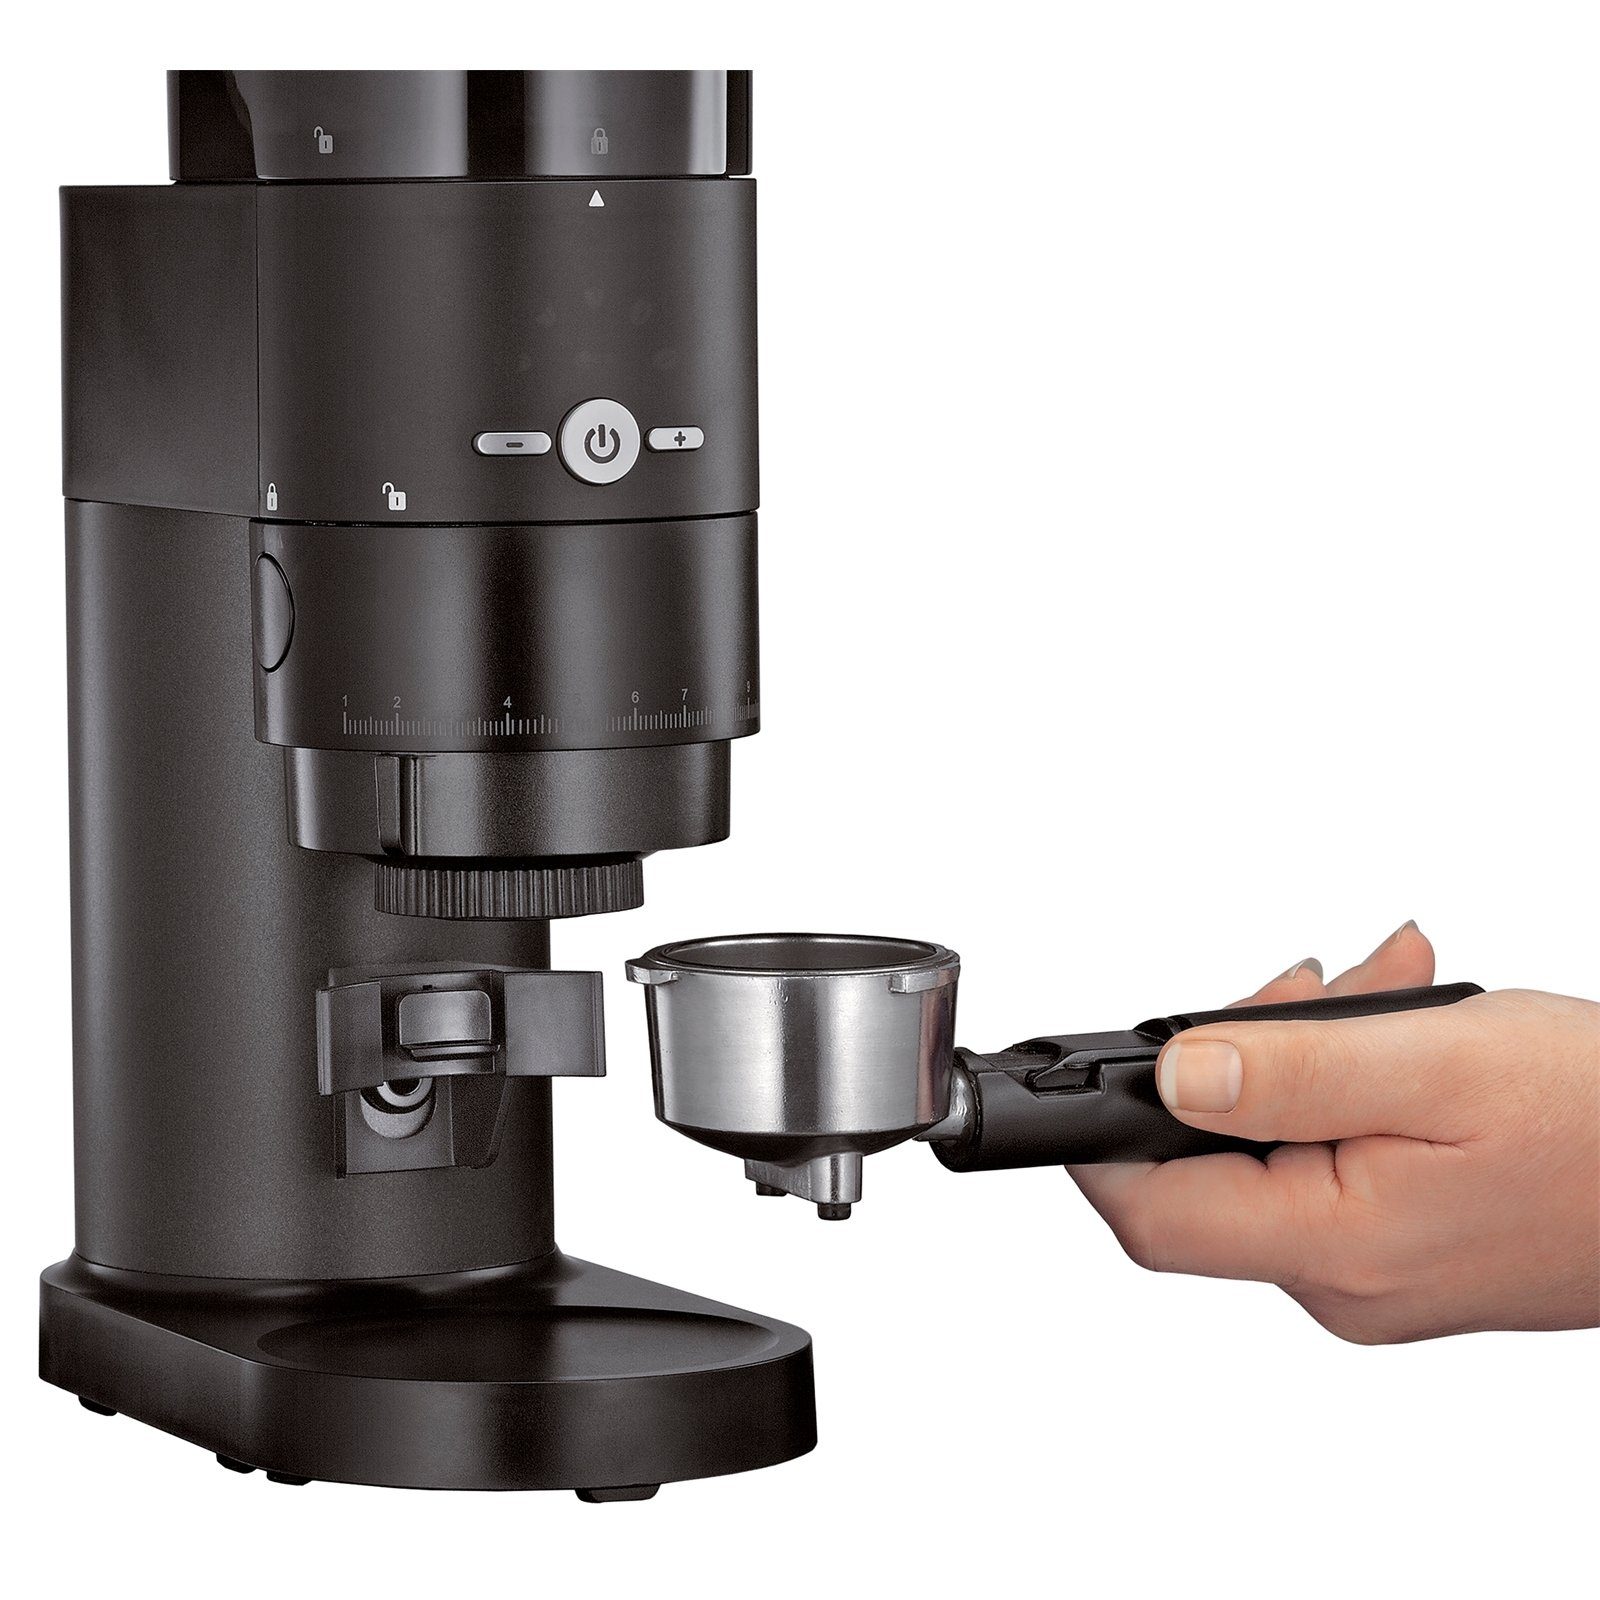 Mühle Kegelmahlwerk Elektrische automatische gehärtetem Expert, Kaffeemühle Stahl, Kaffeemühle ZASSENHAUS aus